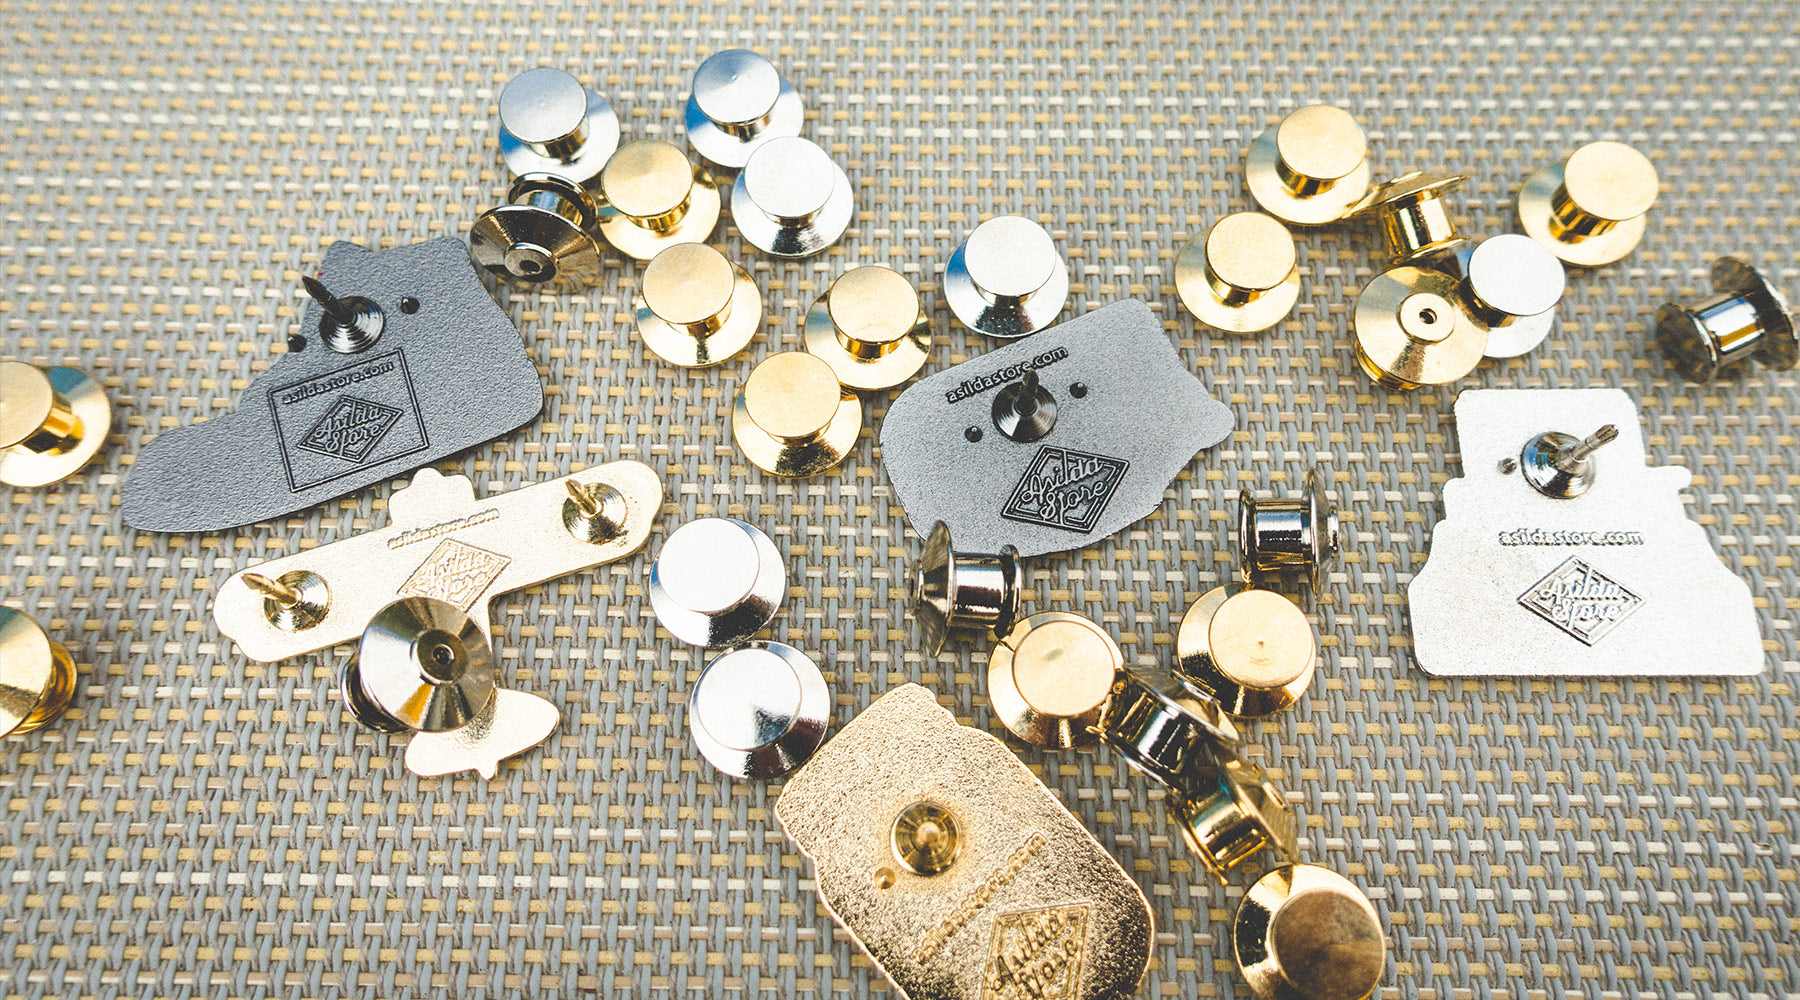 10 New Pin Keepers/Pin Badge Locks/Locking Pin Backs for Enamel